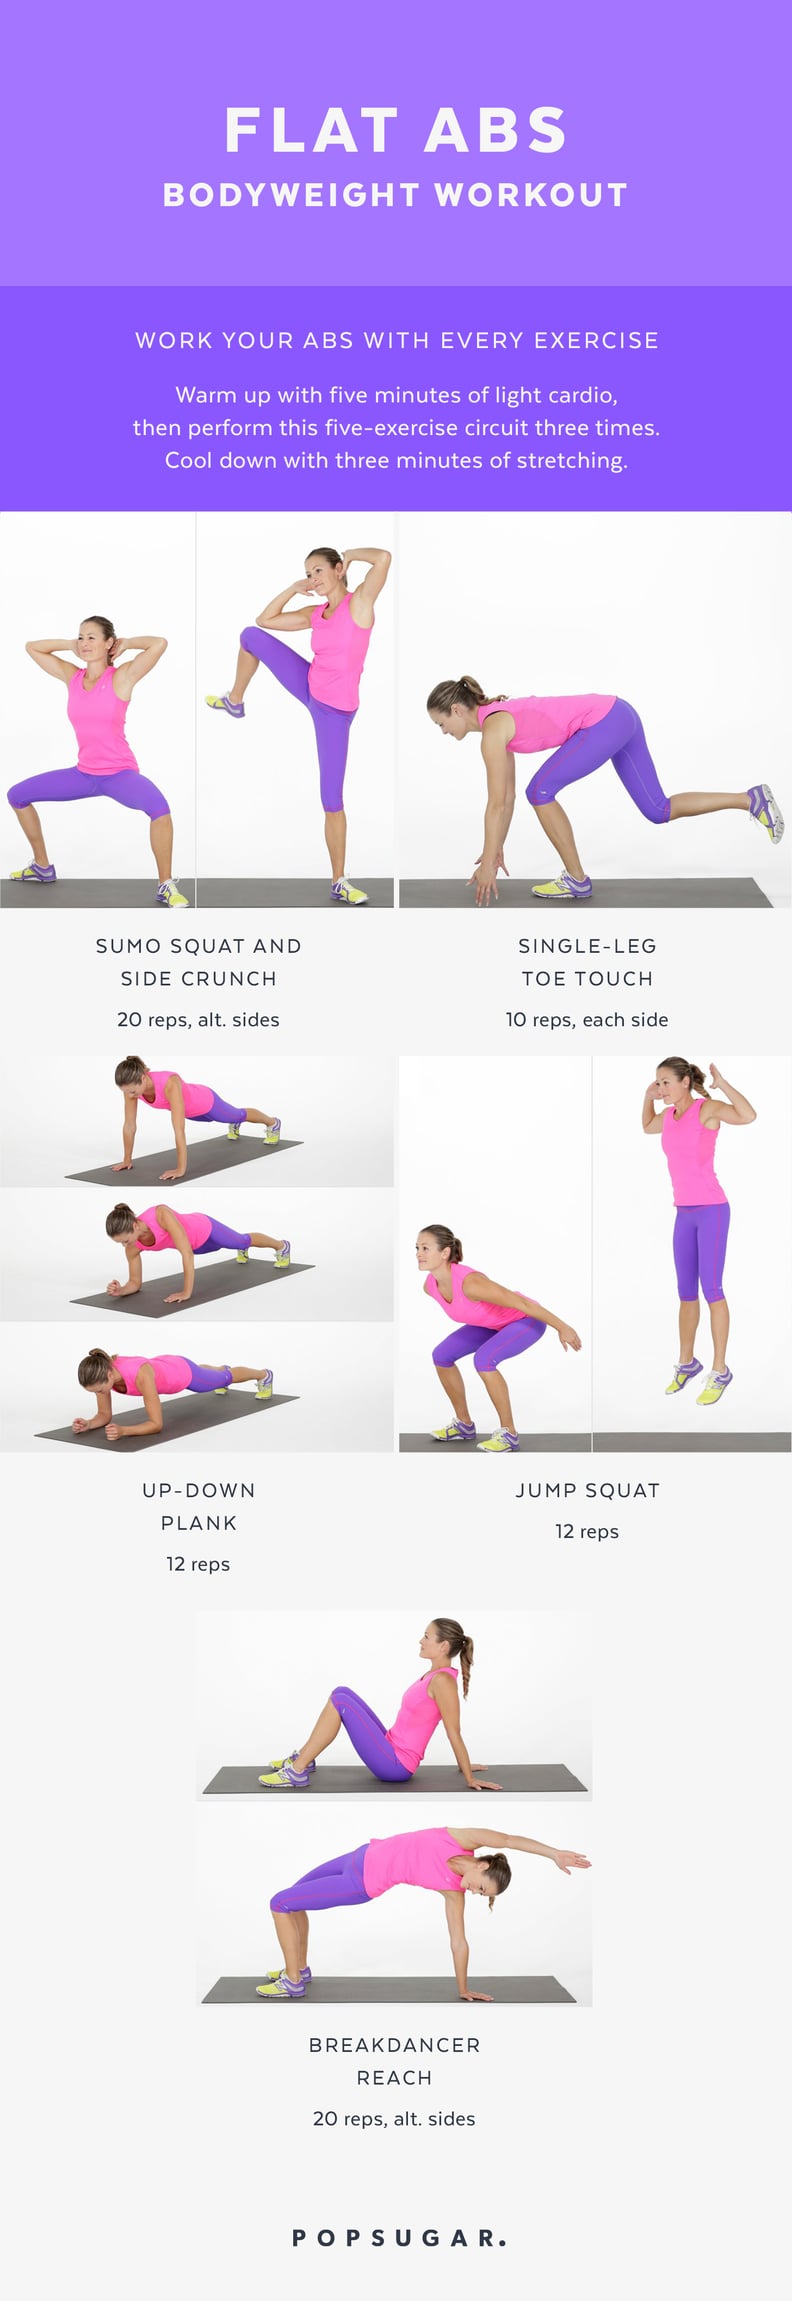 Flat-Abs Bodyweight Workout